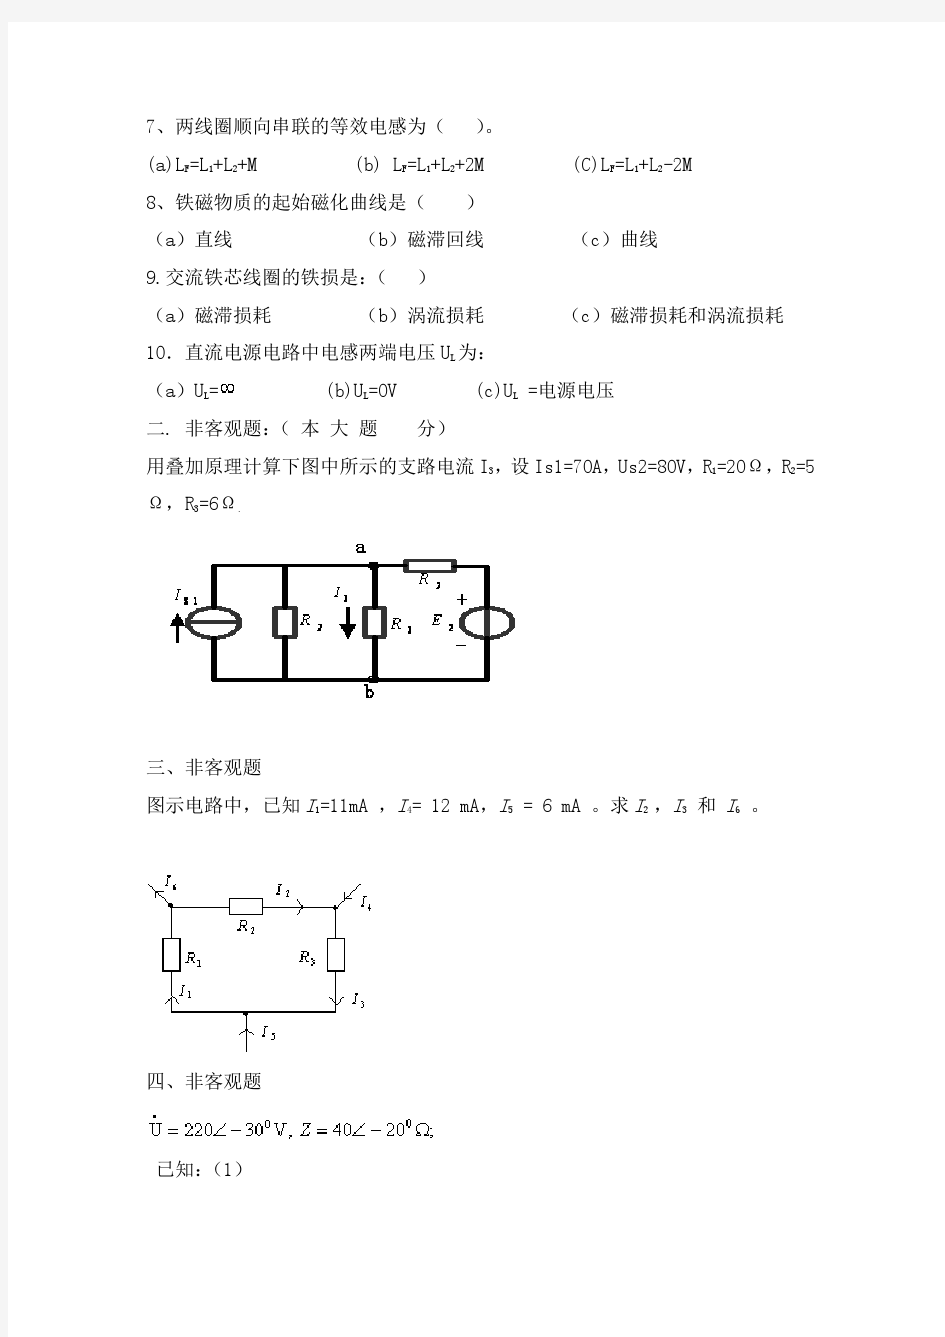 四川大学网络教育学院 电工原理(1) 模拟试题1